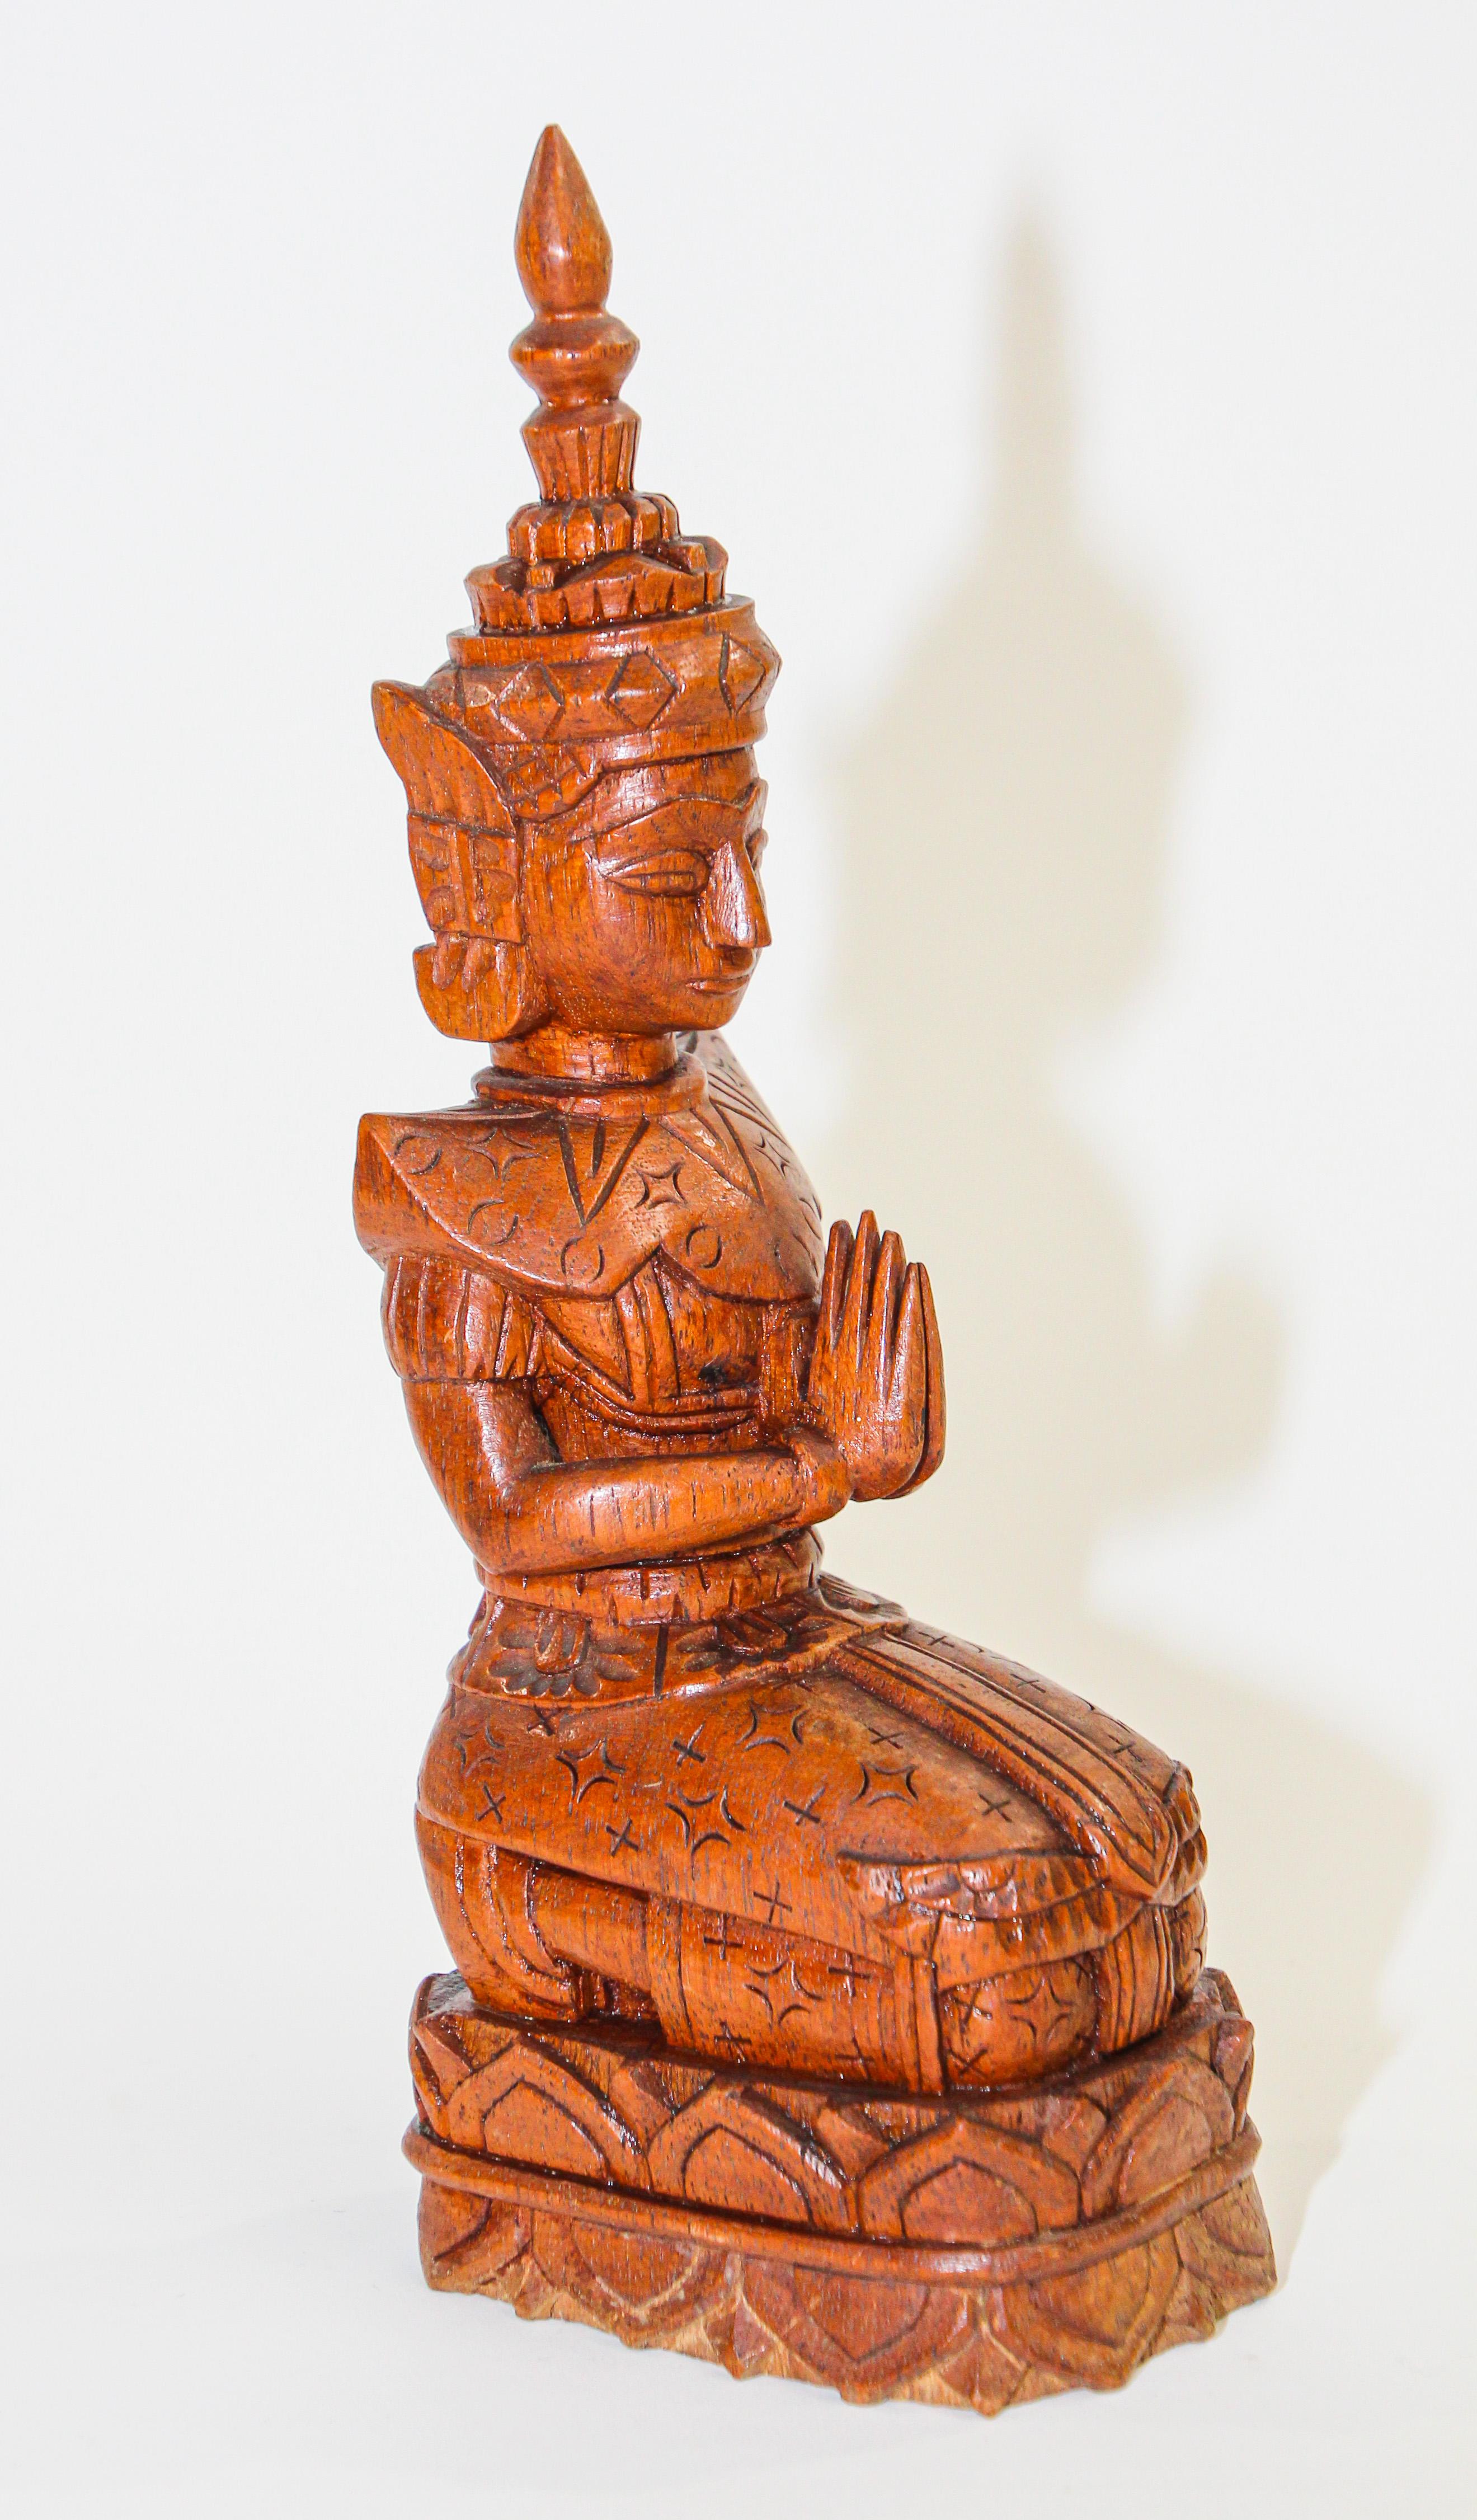 Vintage Wood Carving Art Thai Buddha Figure kneeling and praying.
Vieille sculpture sur bois du milieu du siècle représentant une femme thaïlandaise paisible agenouillée et priant. 
Reproduction d'une figurine magnifiquement détaillée d'un